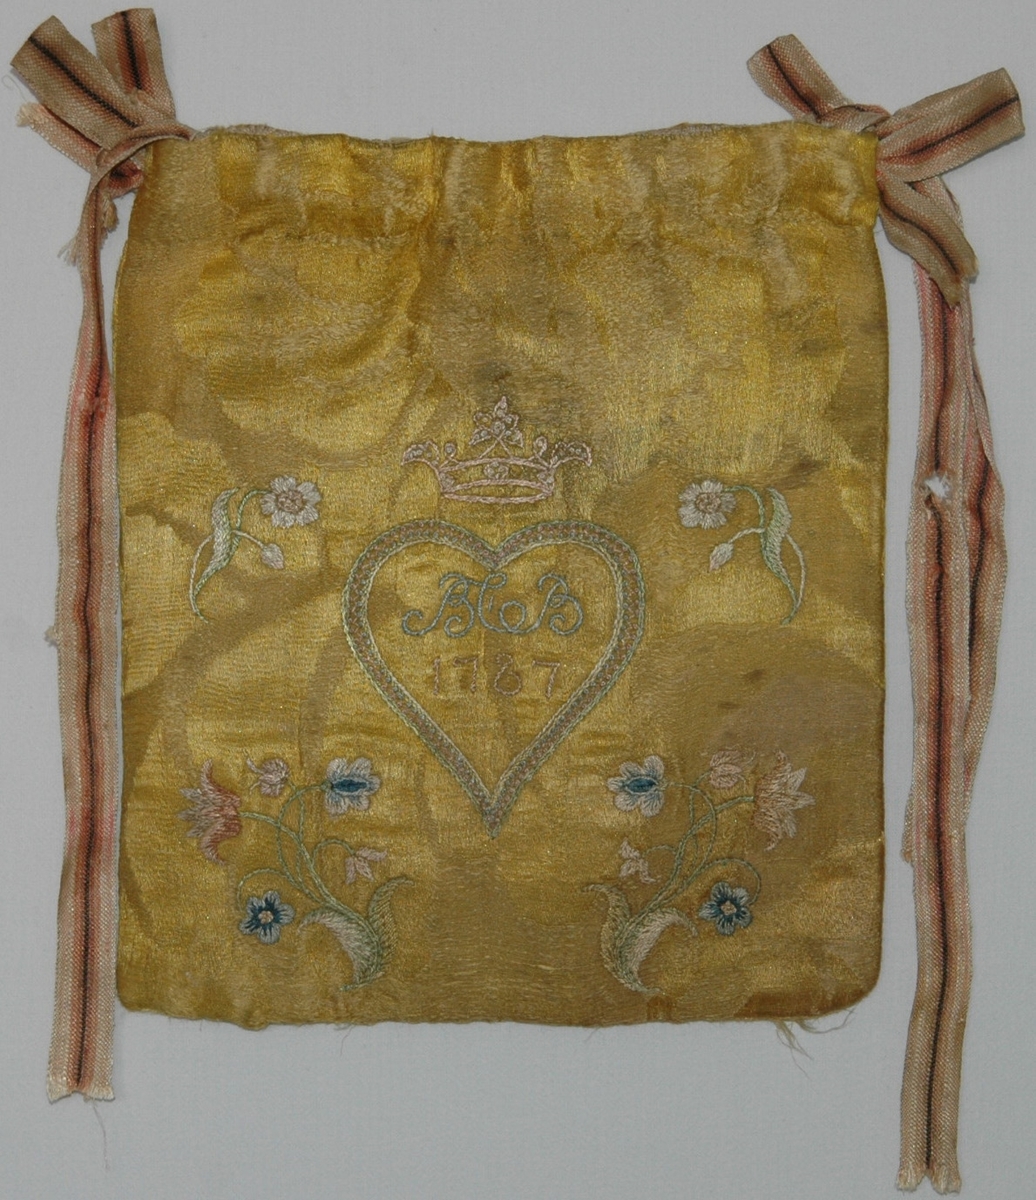 Handväska av gult sidendamasttyg med broderi i flera färer. Märkt på ena sidan BCB 1787 i ett hjärta under en grevlig krona. På andra sidan en broderad blomma. Fodrad med linnetyg.